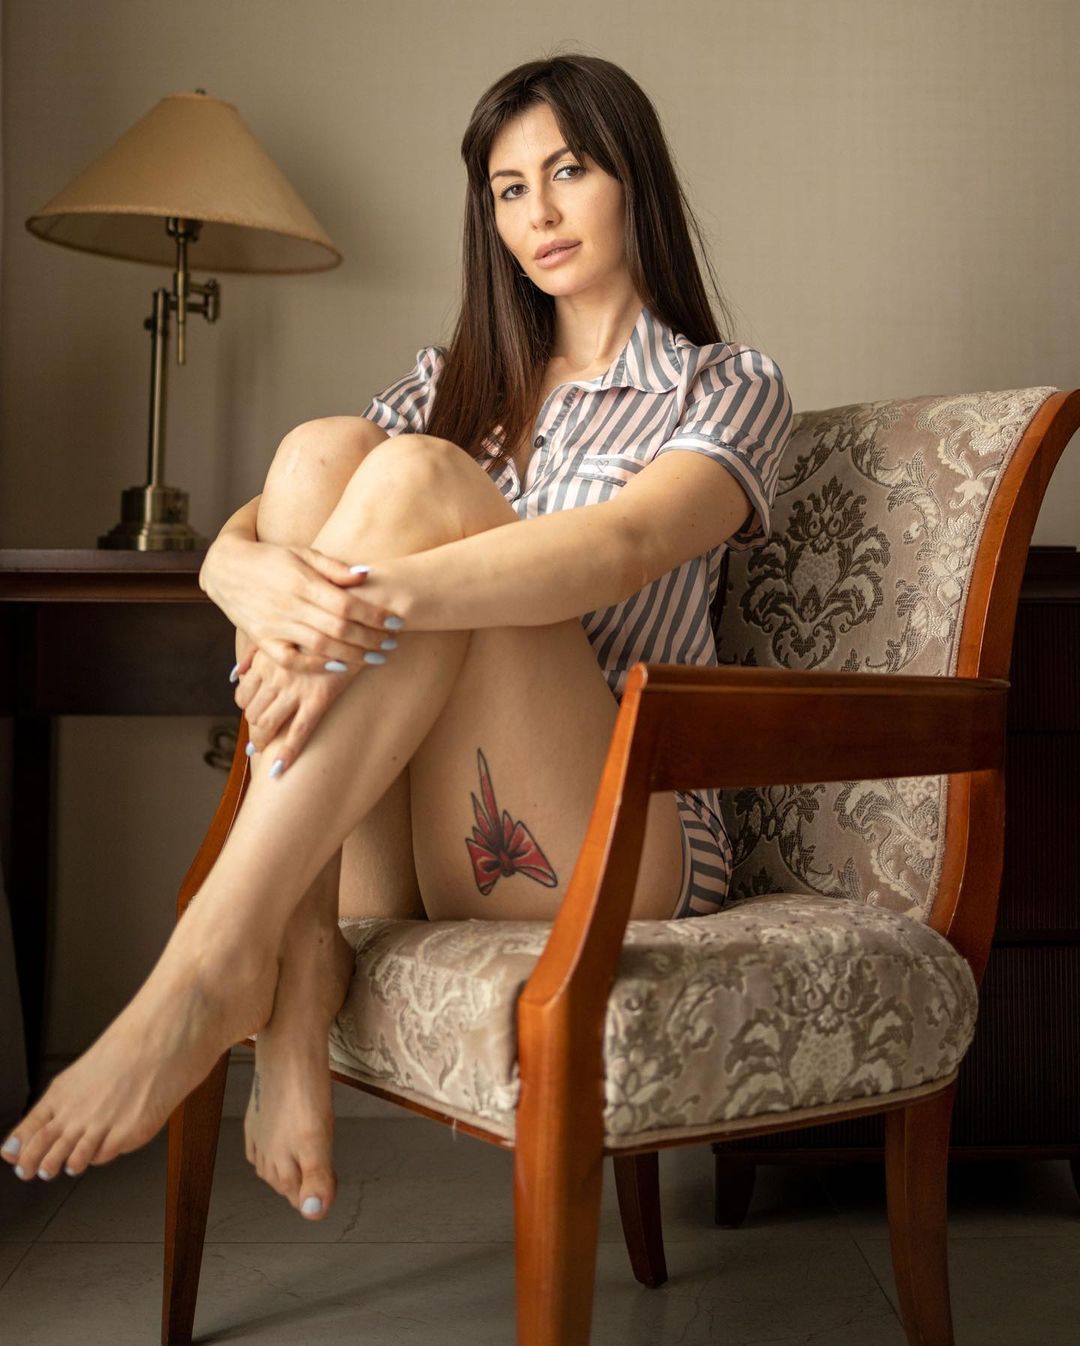 जॉर्जियाने शेअर केलेल्या फोटोंवरील कमेंट सेक्शनमध्ये तिच्या पायावरील टॅटूवर अनेकांनी भाष्य केल्याचं दिसत आहे. जॉर्जियाच्या पायावर गाठ मारलेल्या रेड रिबीनचा टॅटू आहे.